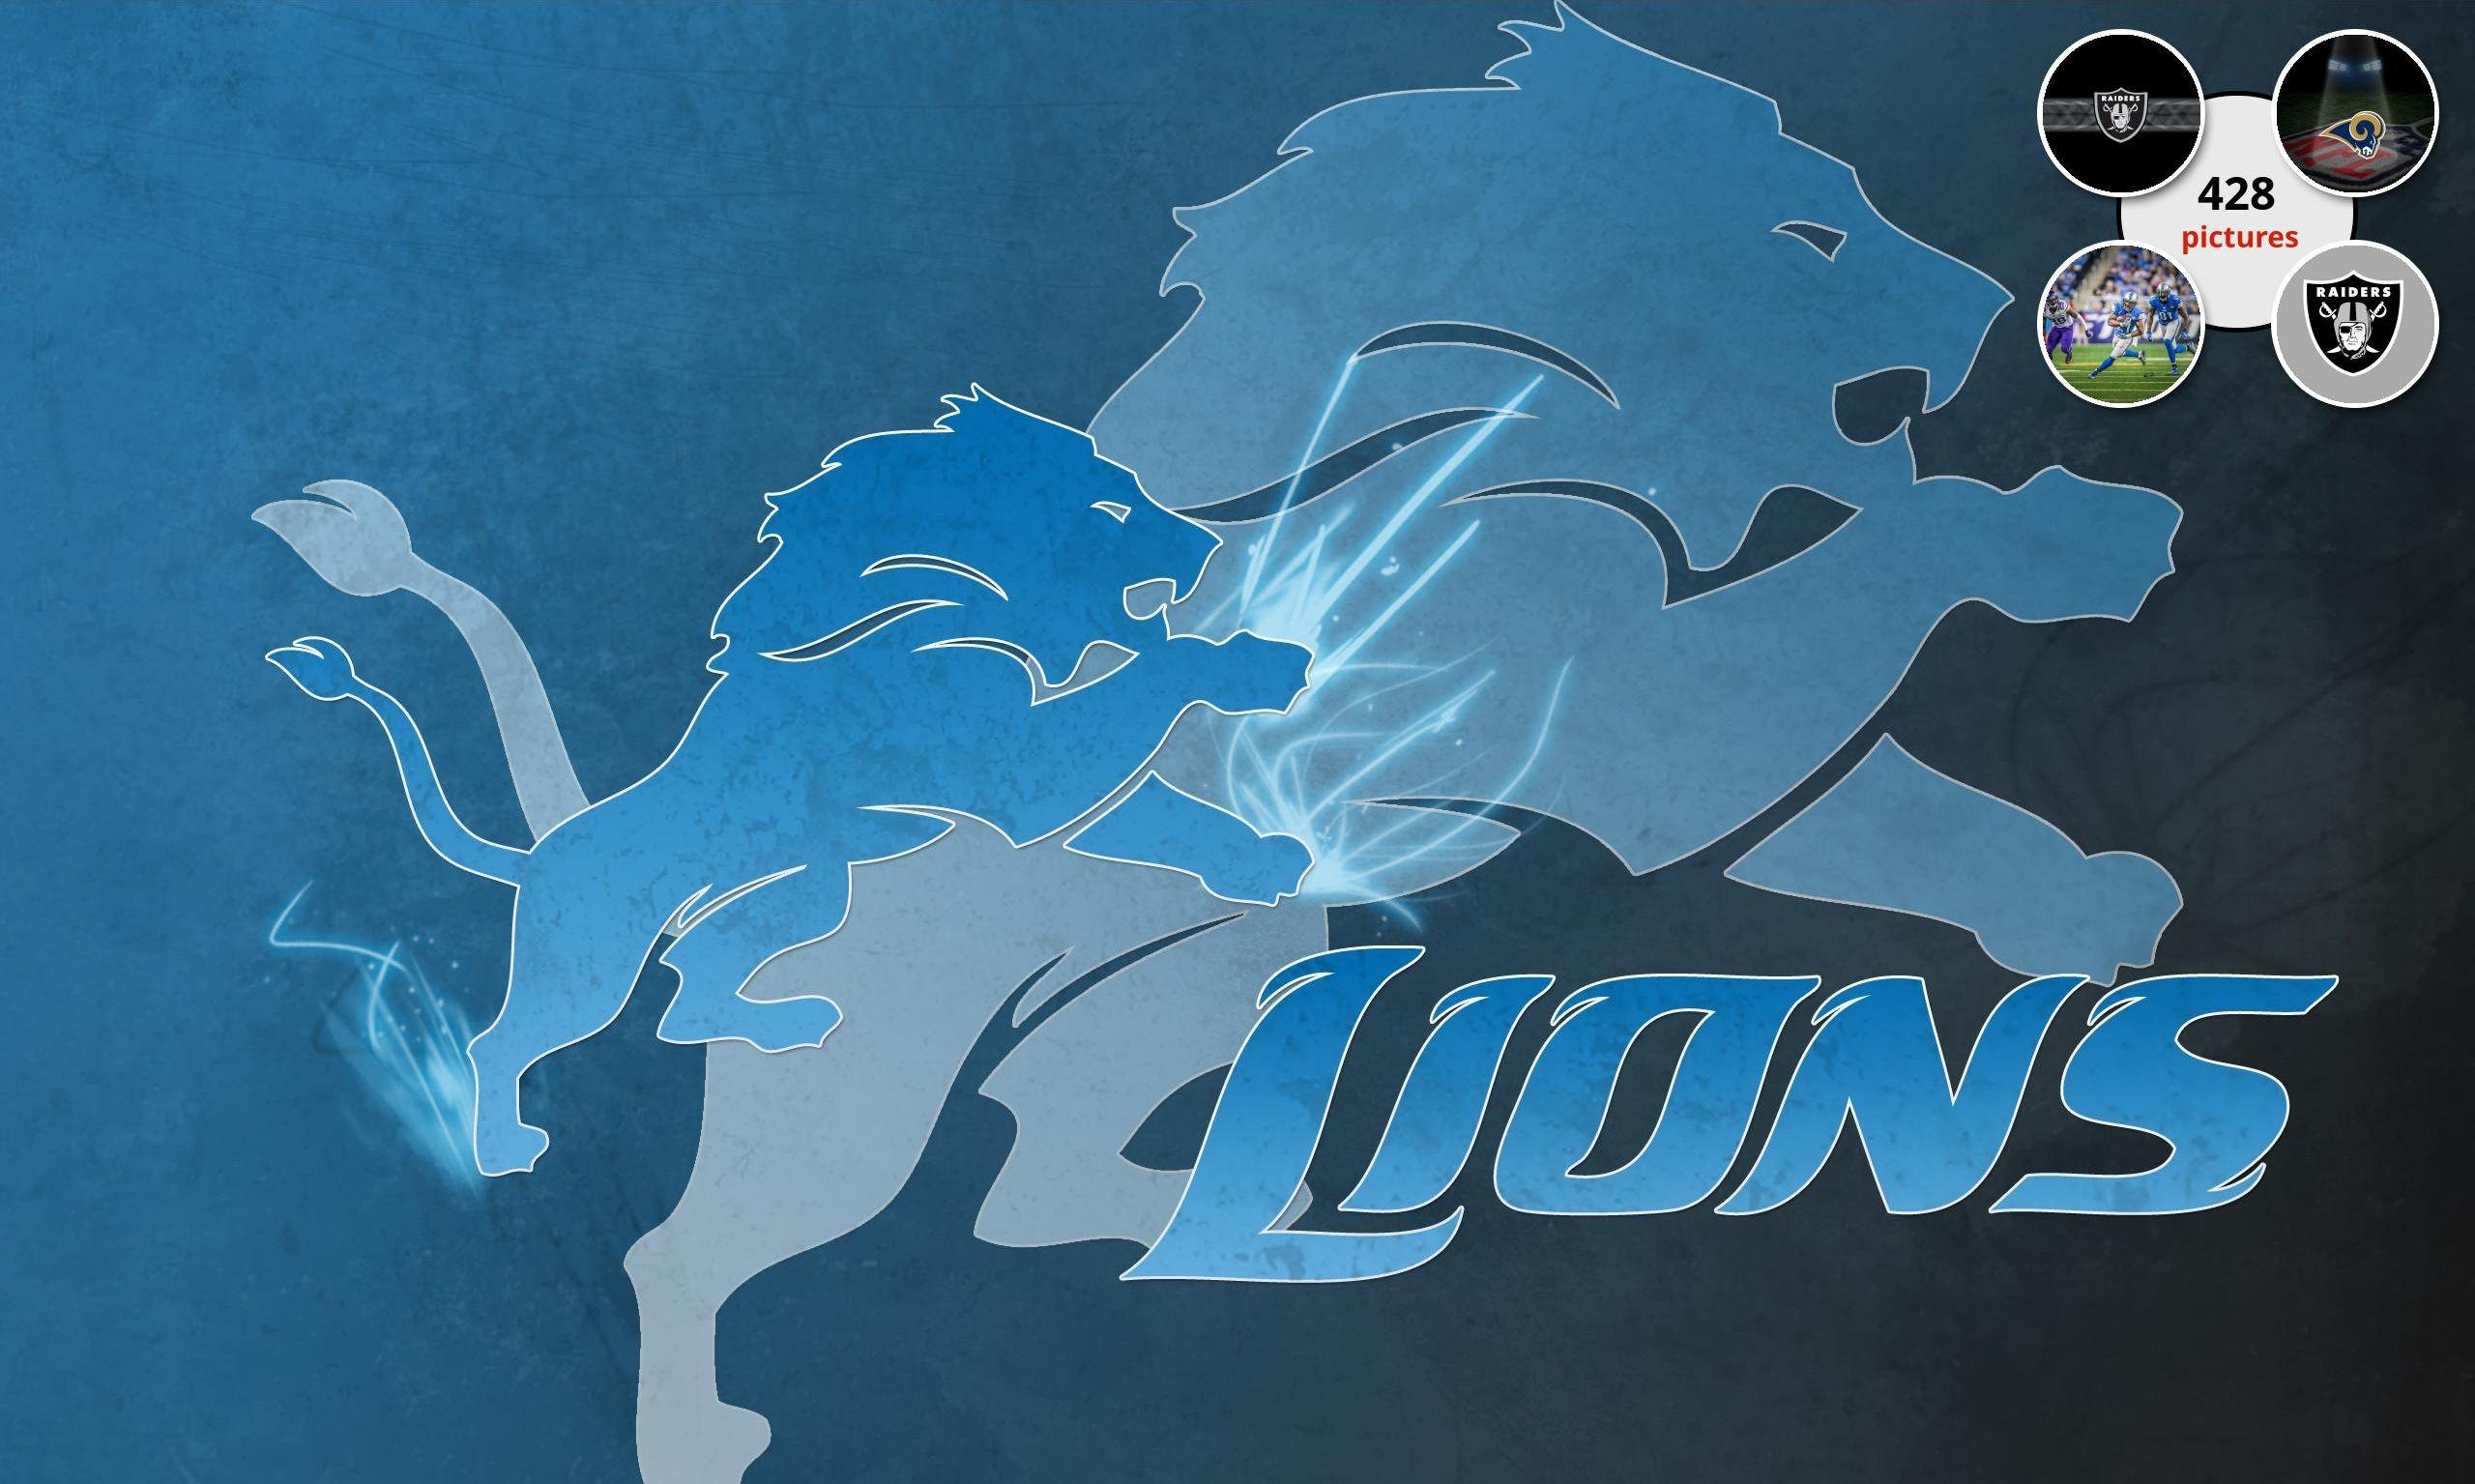 Detroit Lions Background